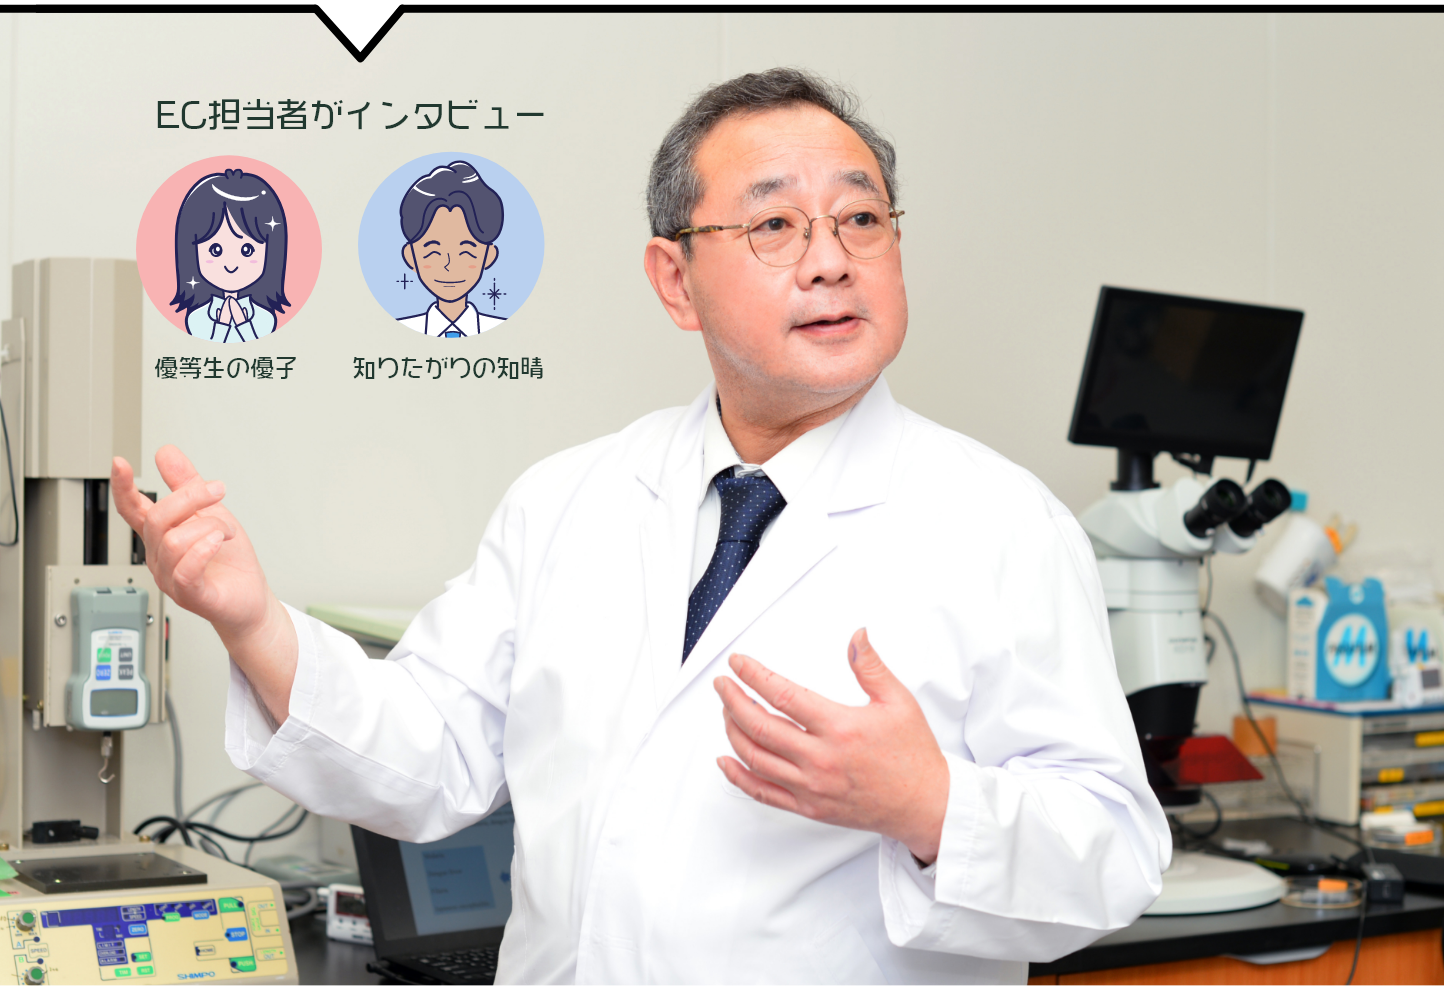 バルサン開発部 主幹技術員亀崎 宏樹 博士（獣医学）   約40年間ダニなど害虫の研究に携わる博士。